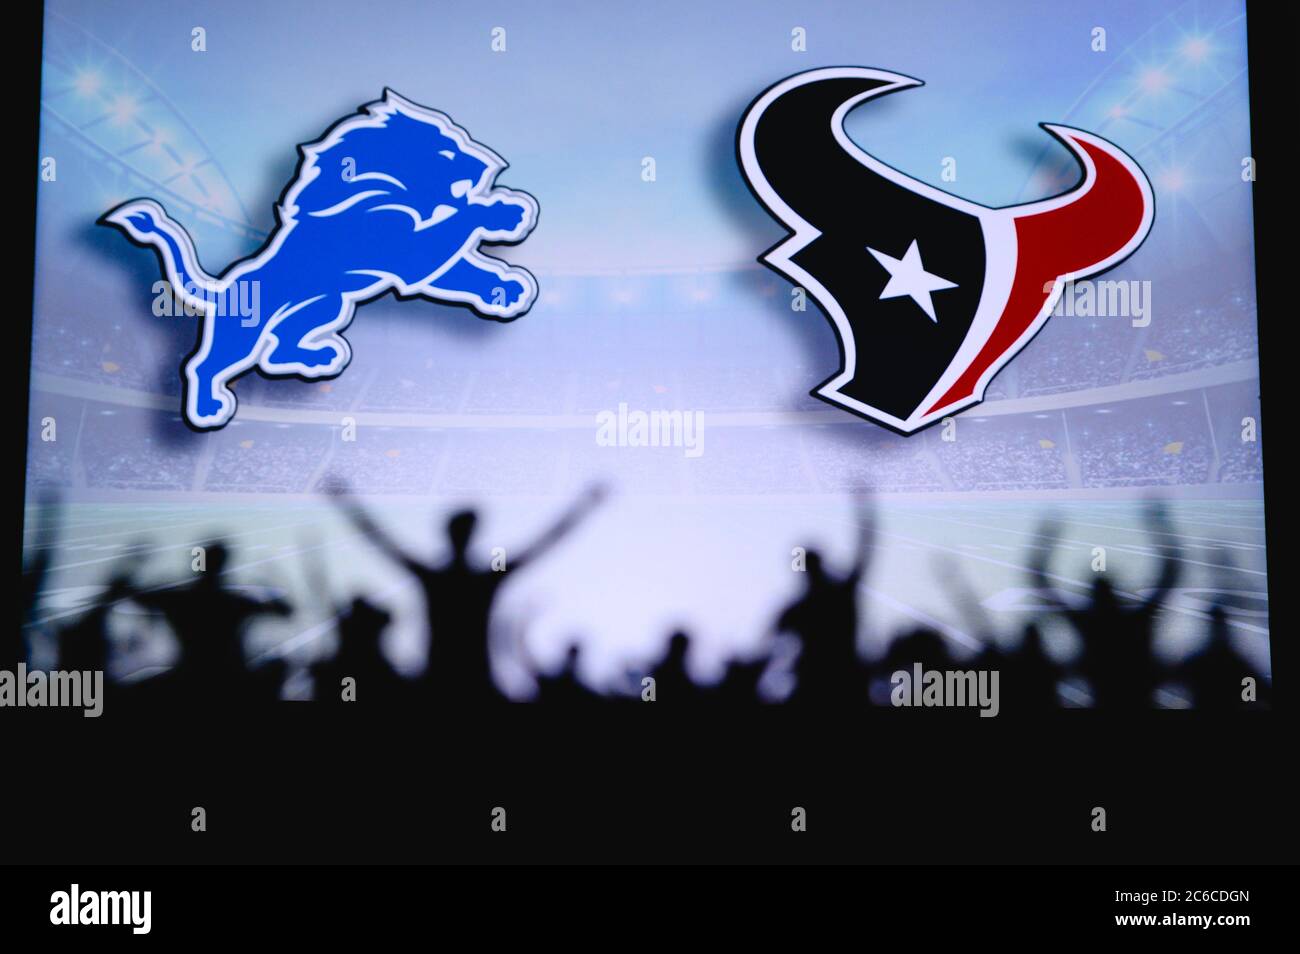 Detroit Lions contro Houston Texans. Supporto dei fan su NFL Game. Silhouette di tifosi, grande schermo con due rivali in background. Foto Stock